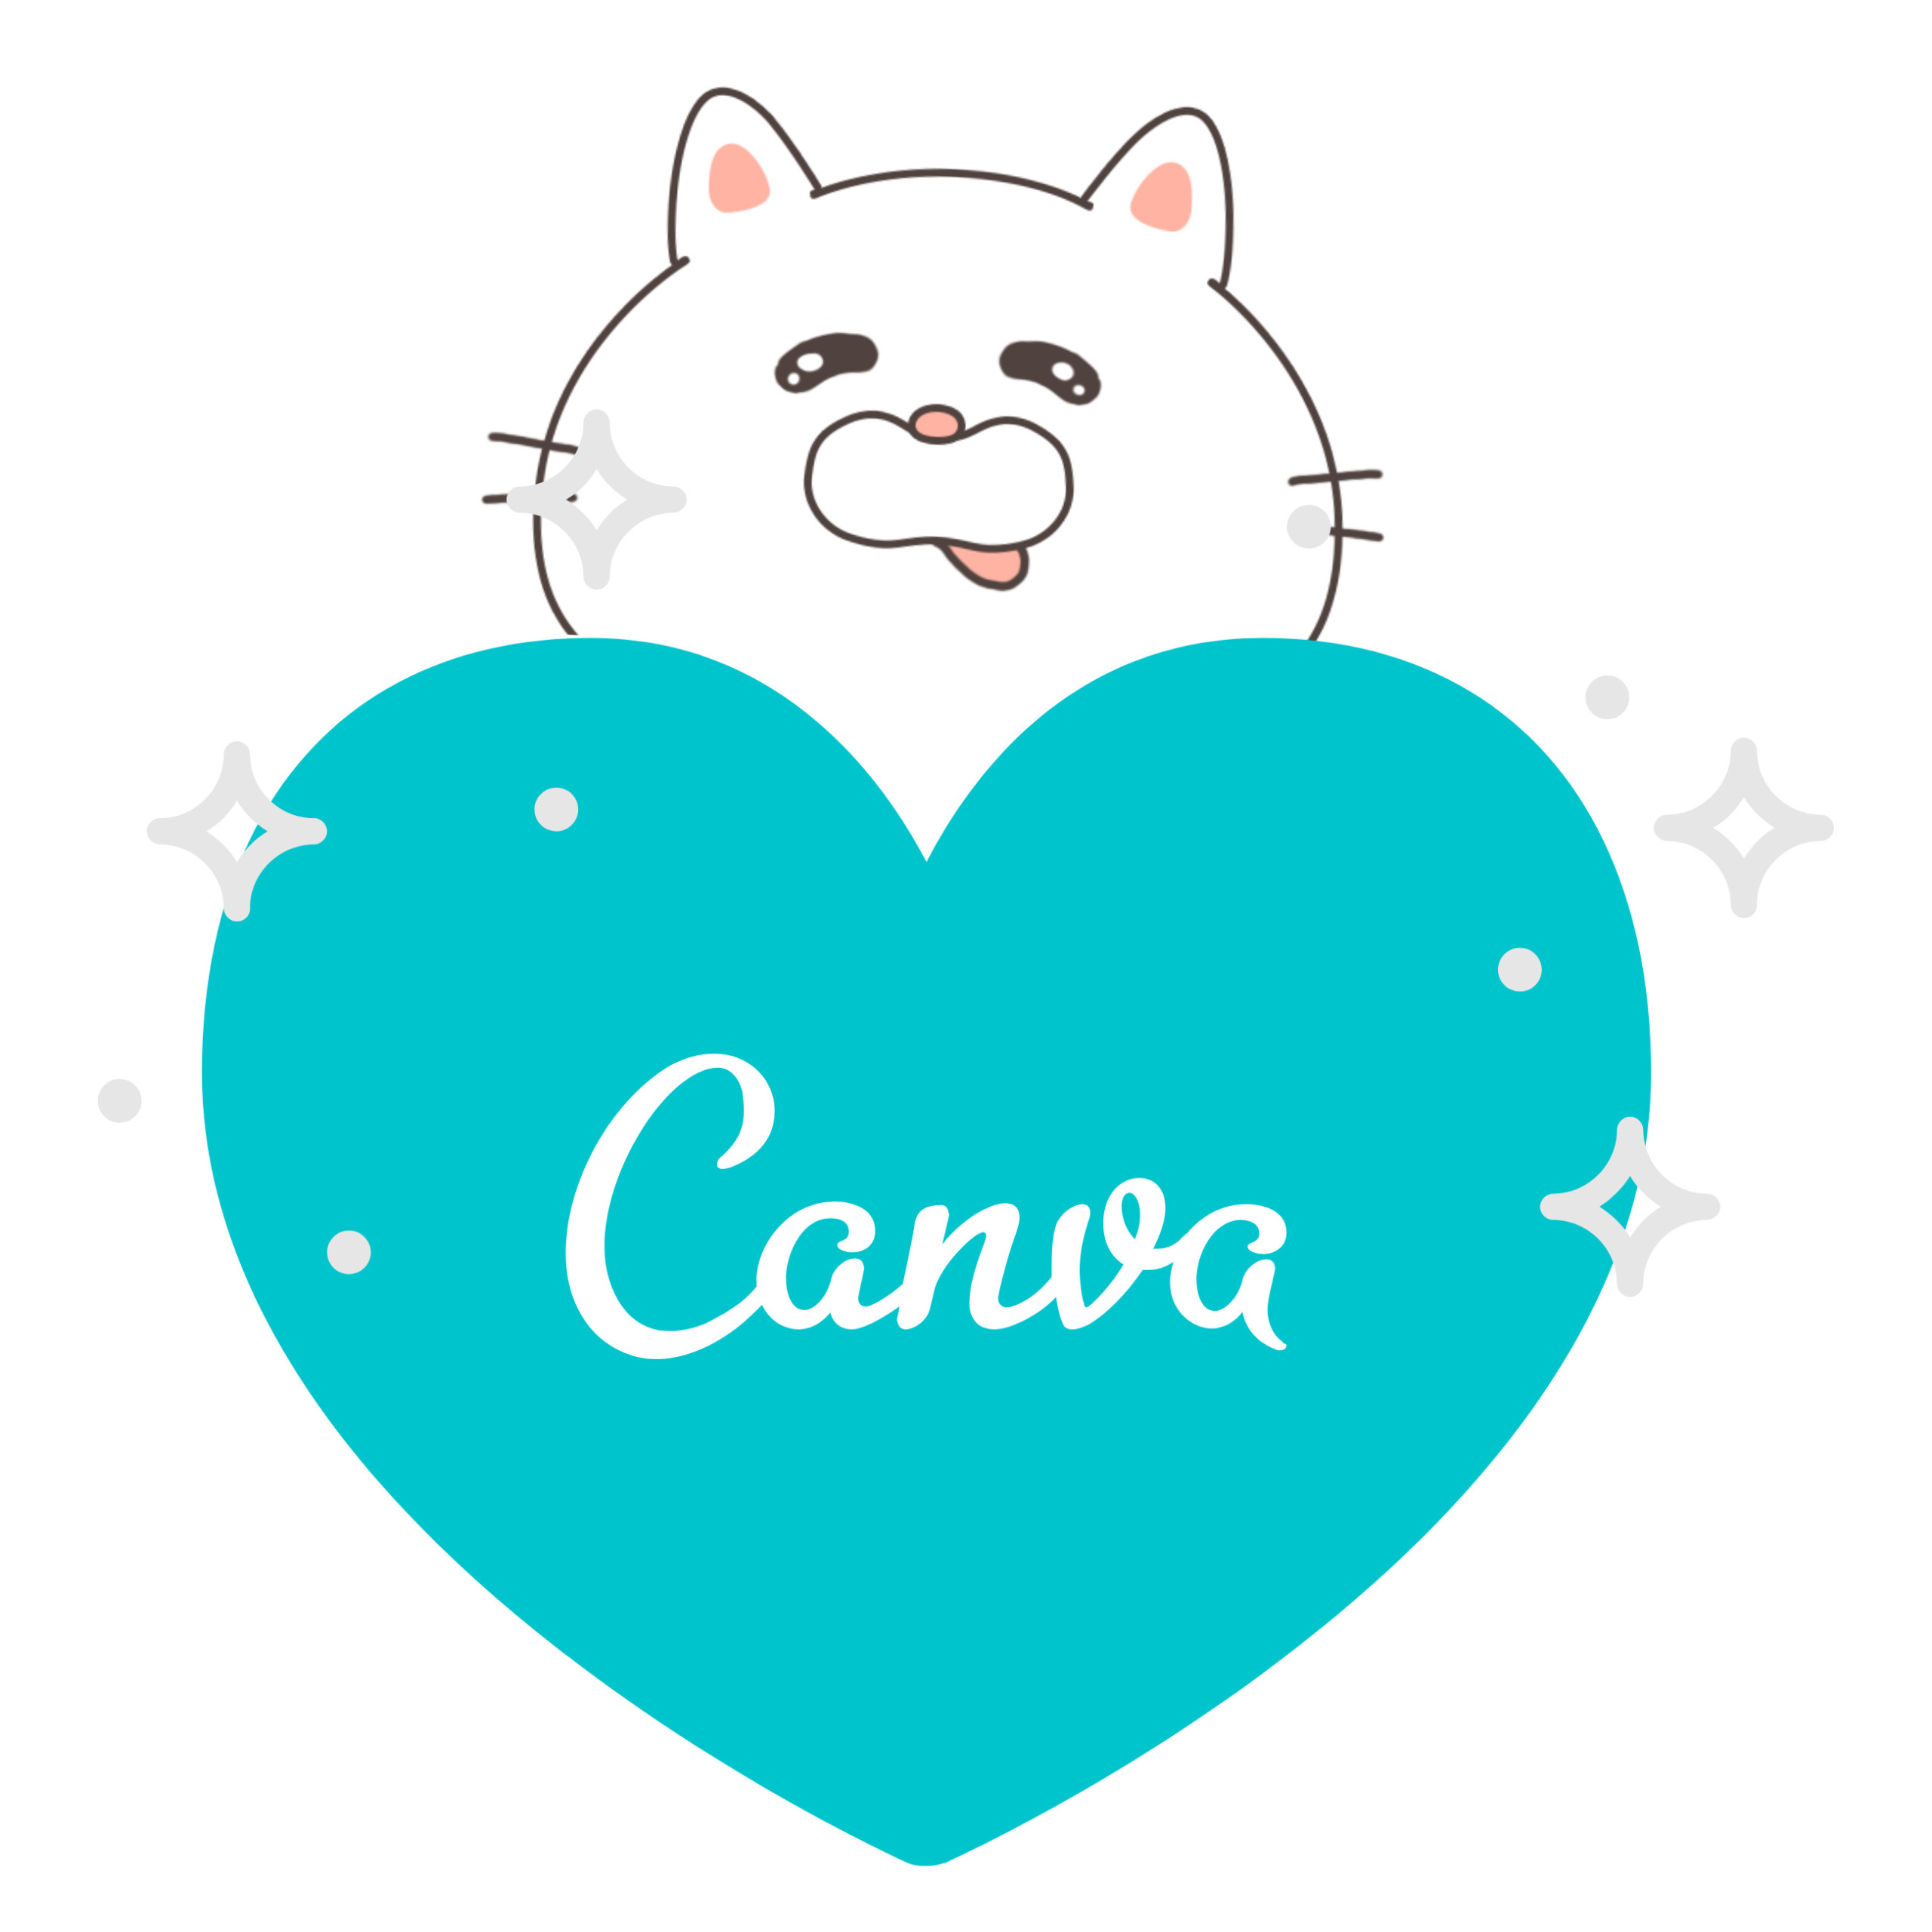 Canvaでロゴ作成 簡単lineアイコン作成方法の手順 よこぽよブログ